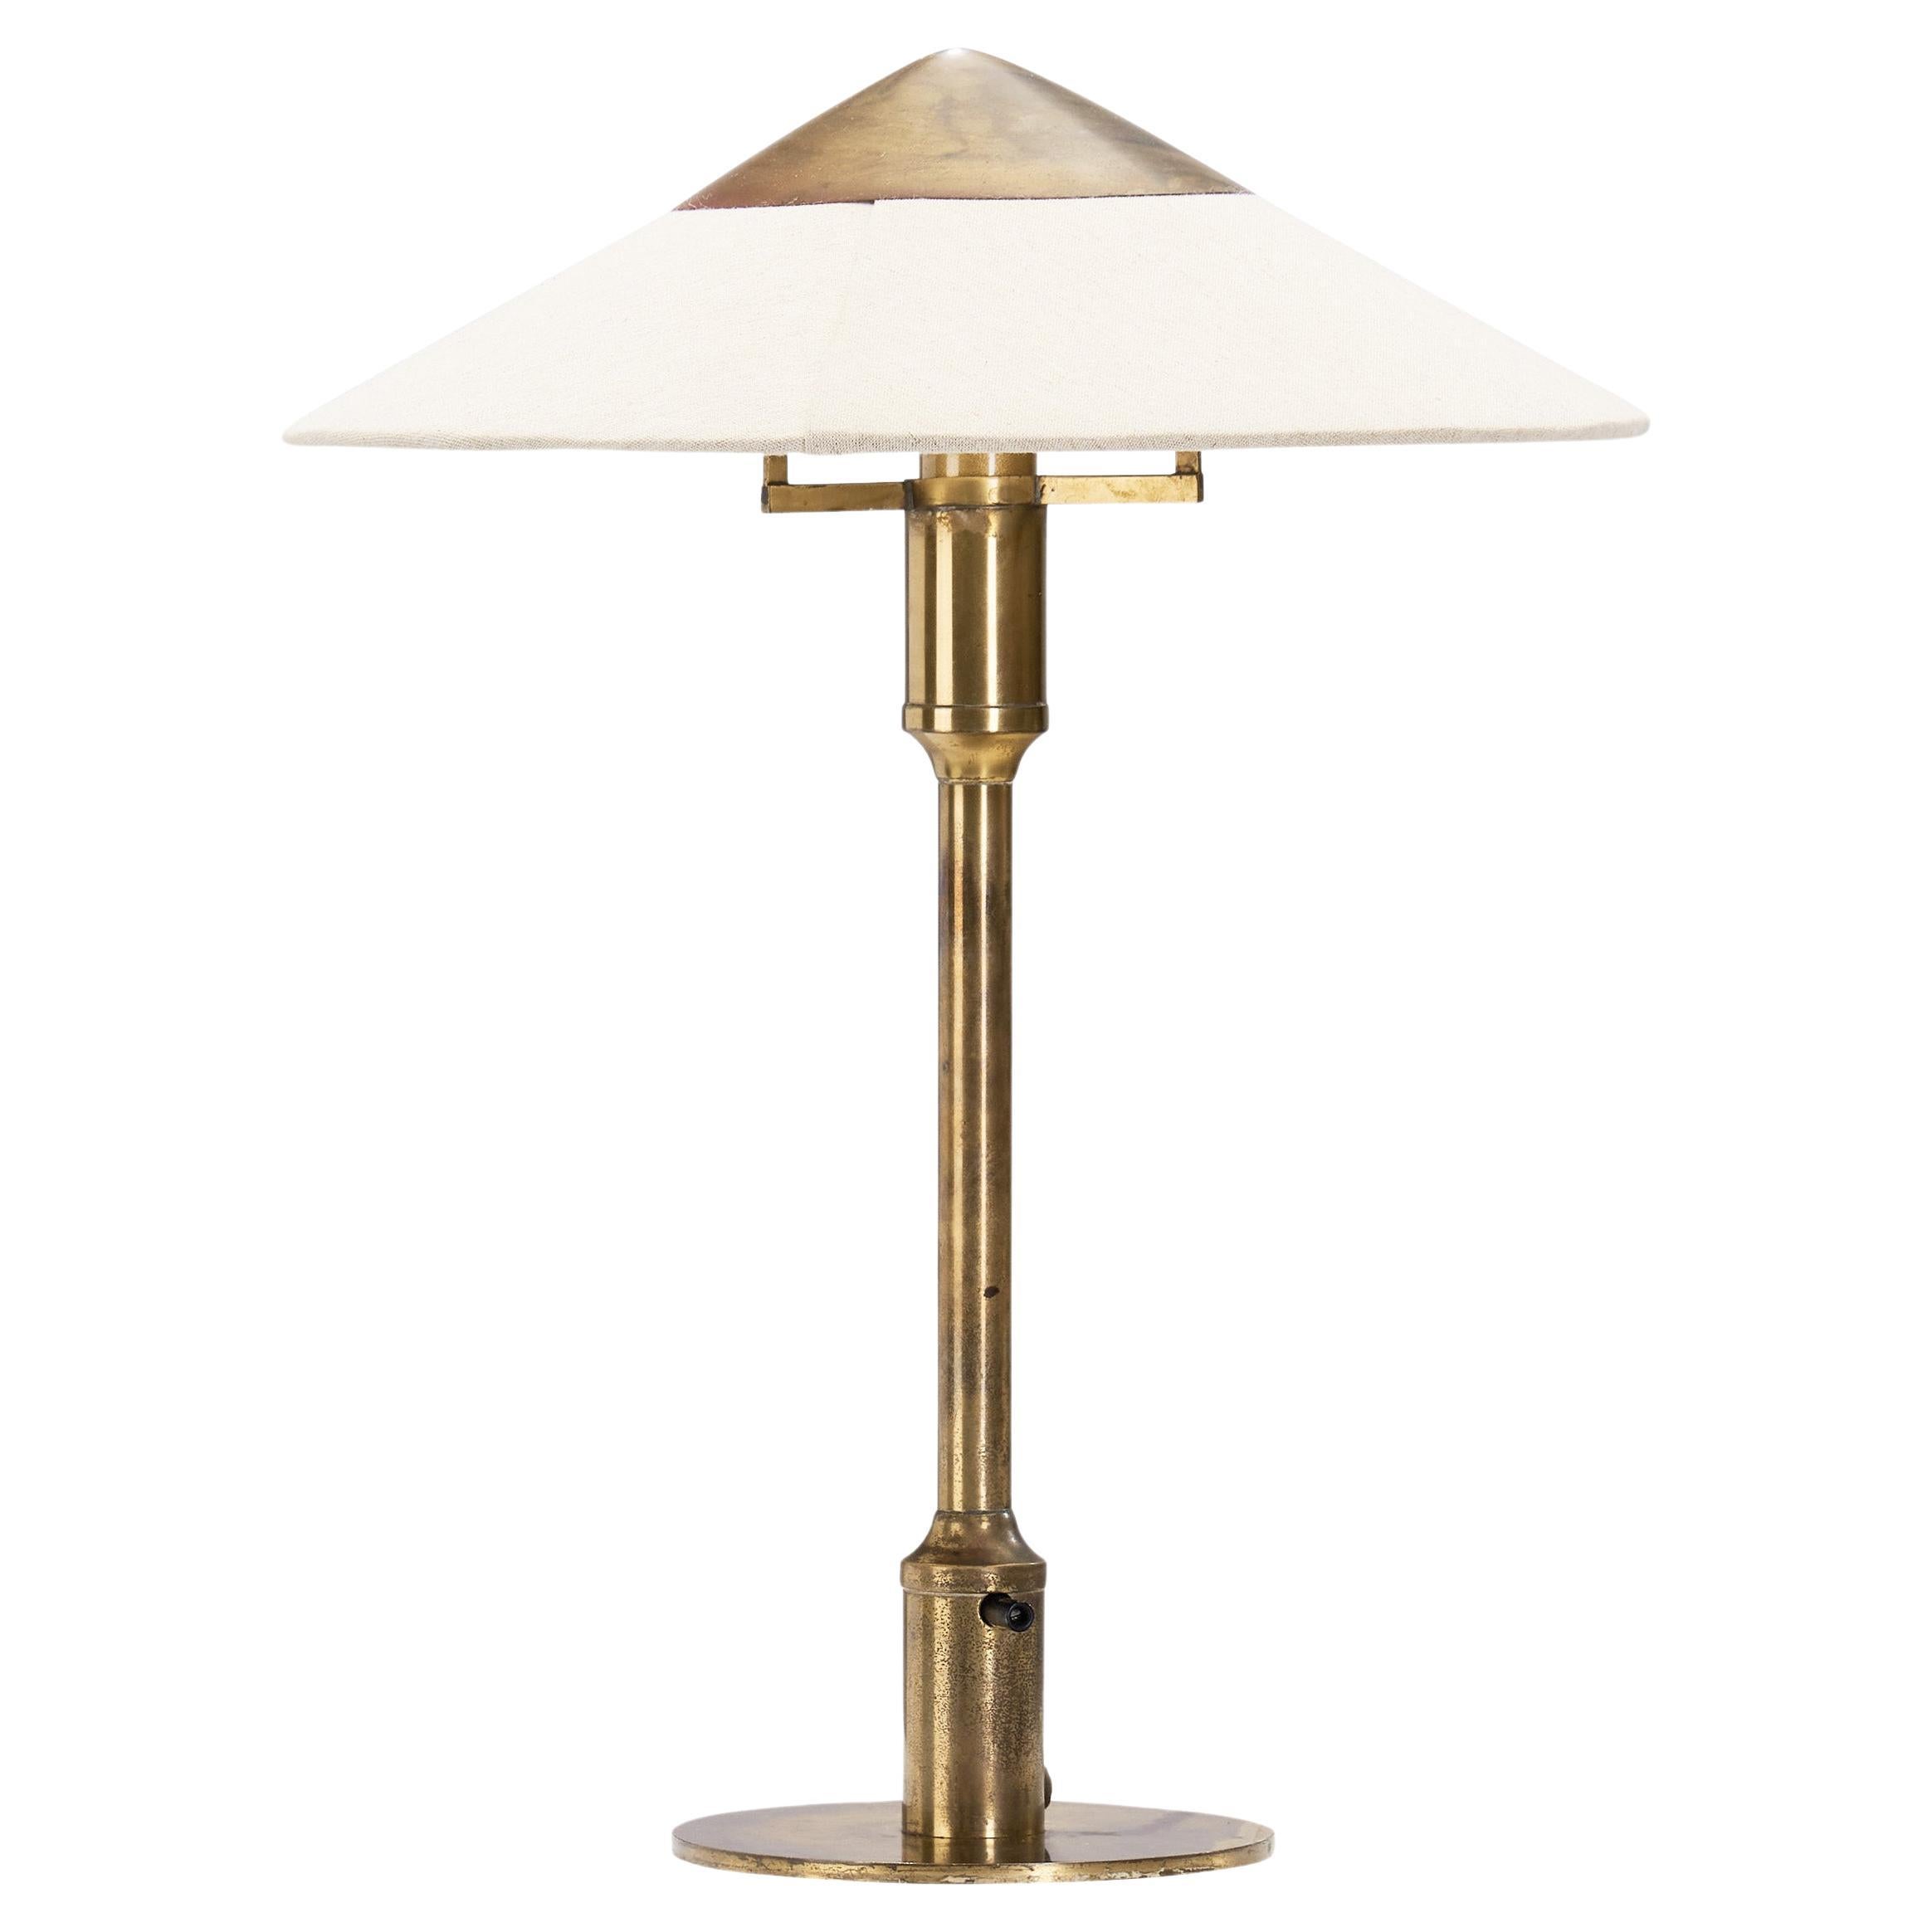 Niels Rasmussen Thykier “Kongelys T3” Table Lamp for Fog & Mörup, Denmark 1940s For Sale